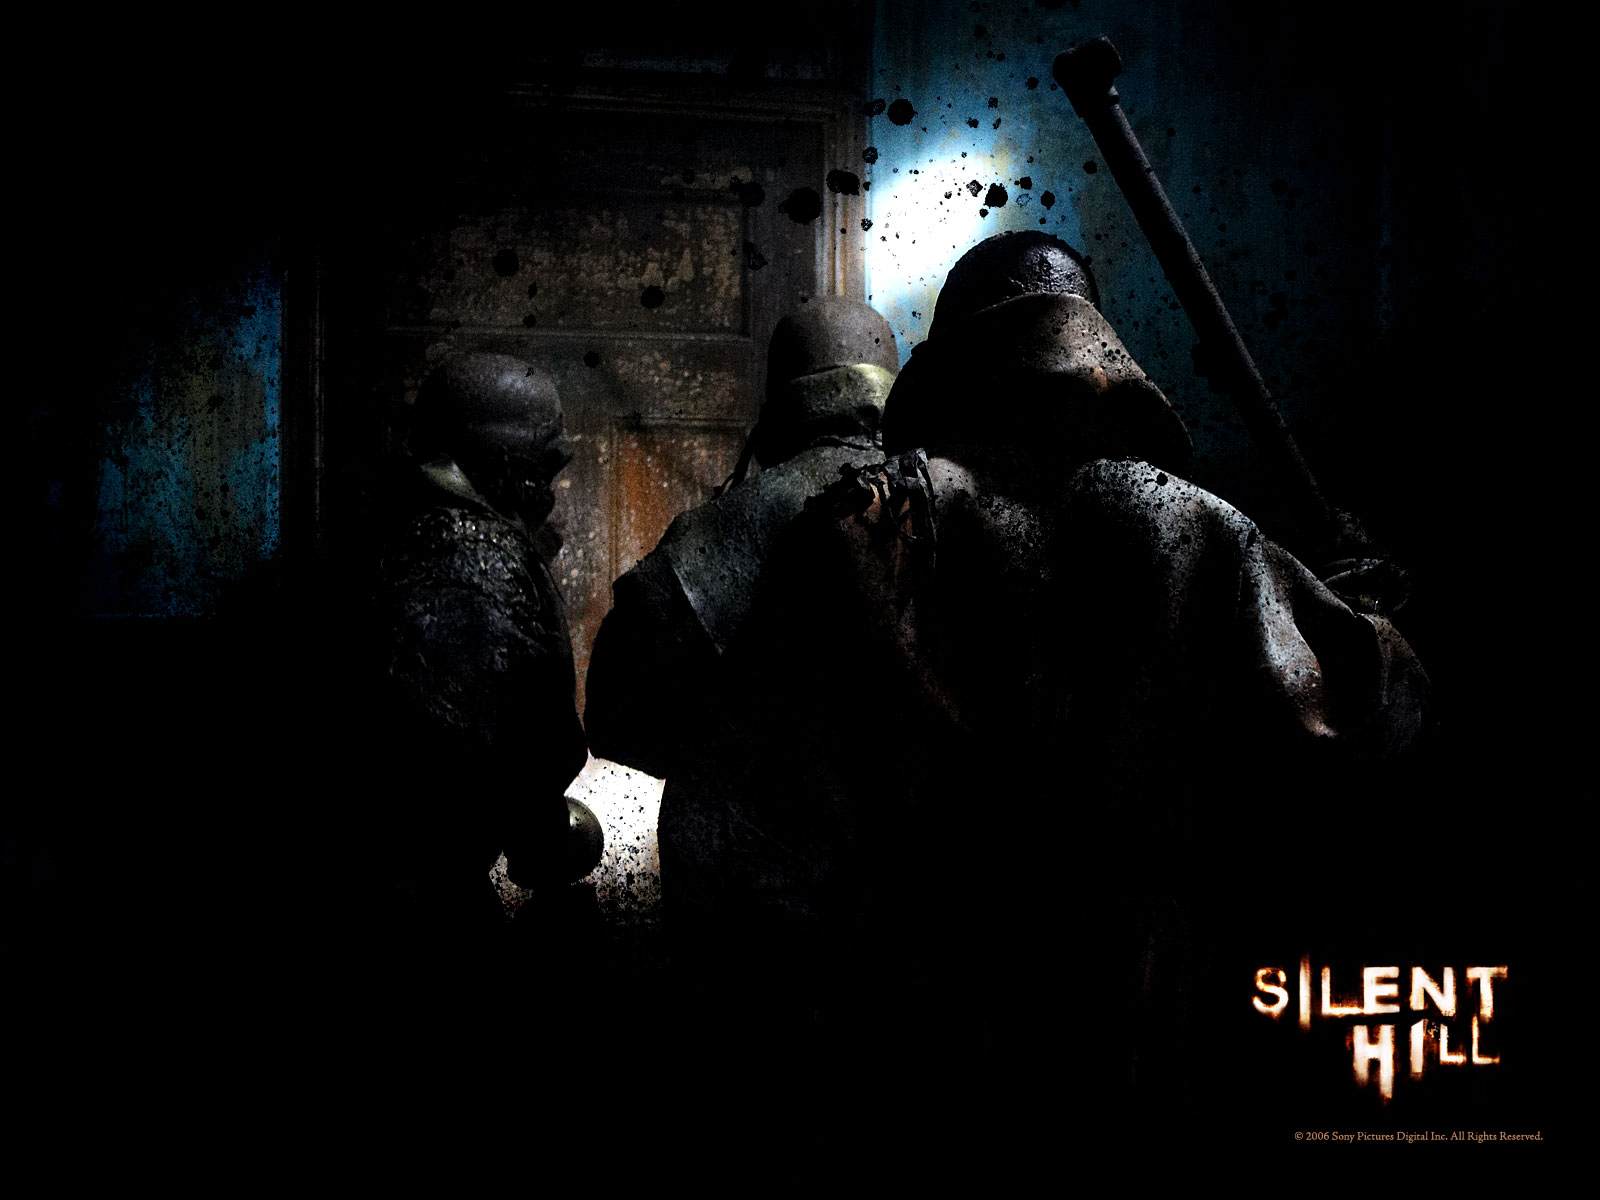 壁纸1600x1200 寂静岭 电影壁纸 Movie wallpaper Silent Hill 2006壁纸 恐怖电影《寂静岭 Silent Hill》壁纸 恐怖电影《寂静岭 Silent Hill》图片 恐怖电影《寂静岭 Silent Hill》素材 影视壁纸 影视图库 影视图片素材桌面壁纸